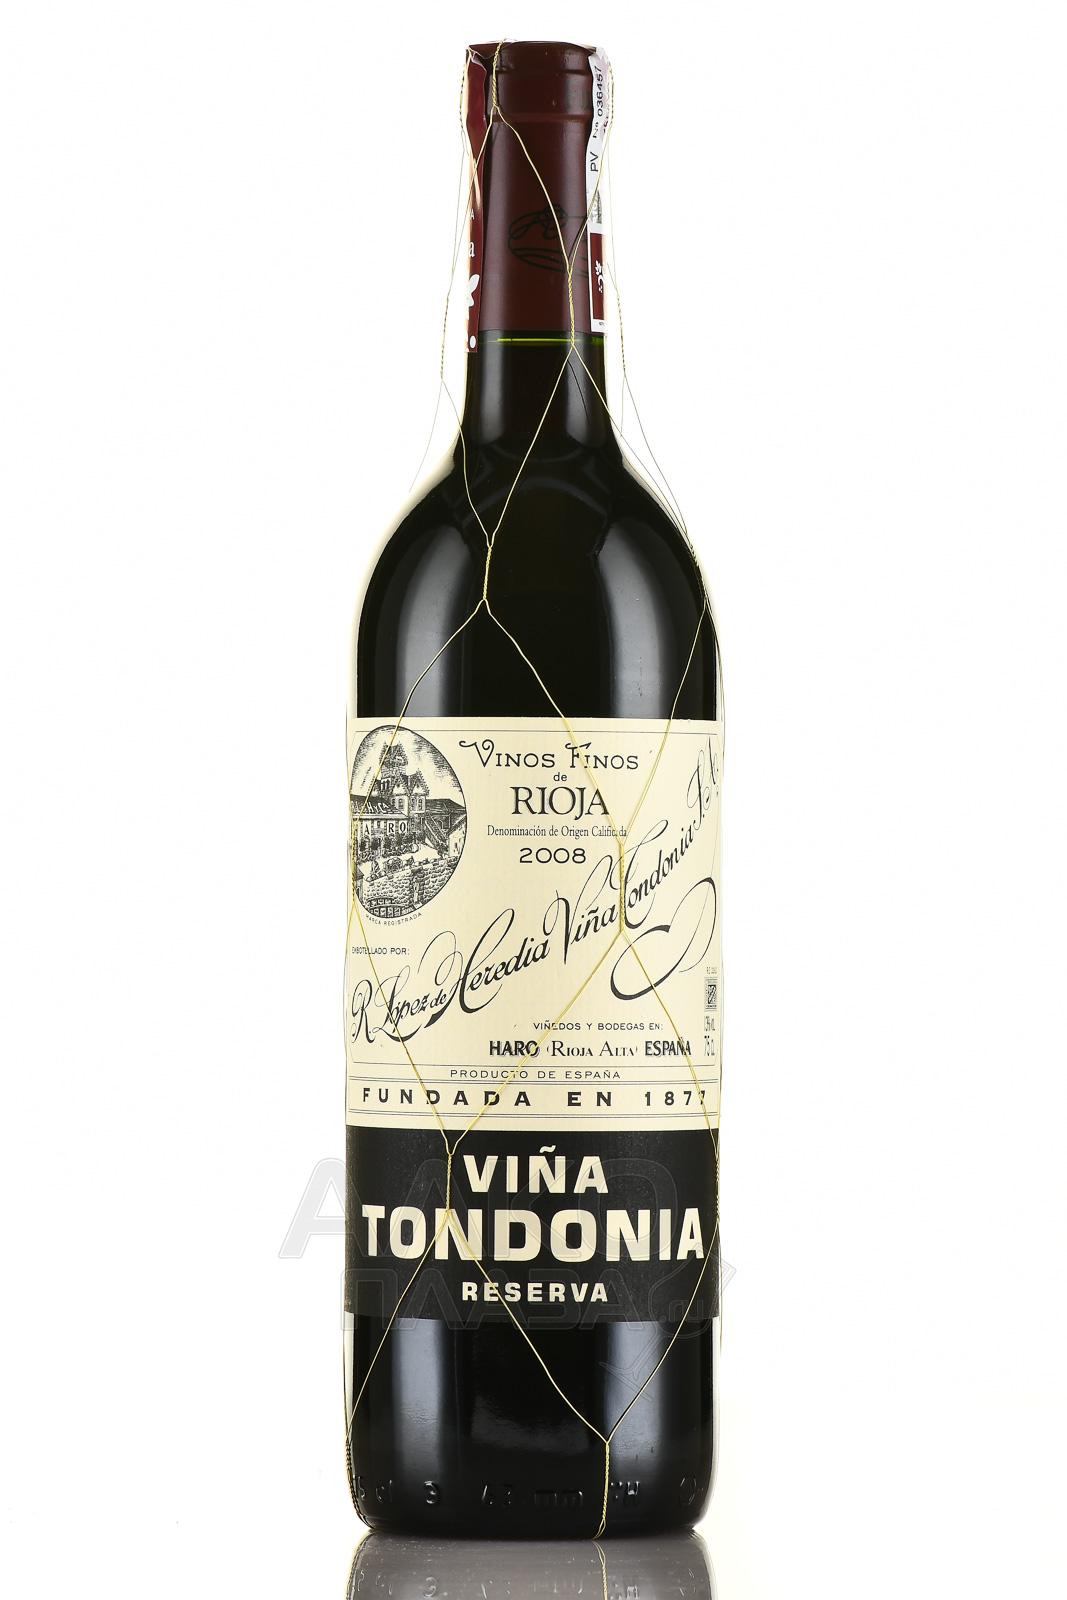 Rioja Vina Tondonia Reserva - вино Винья Тондония Резерва ДОКа Риоха 0.75 л красное сухое